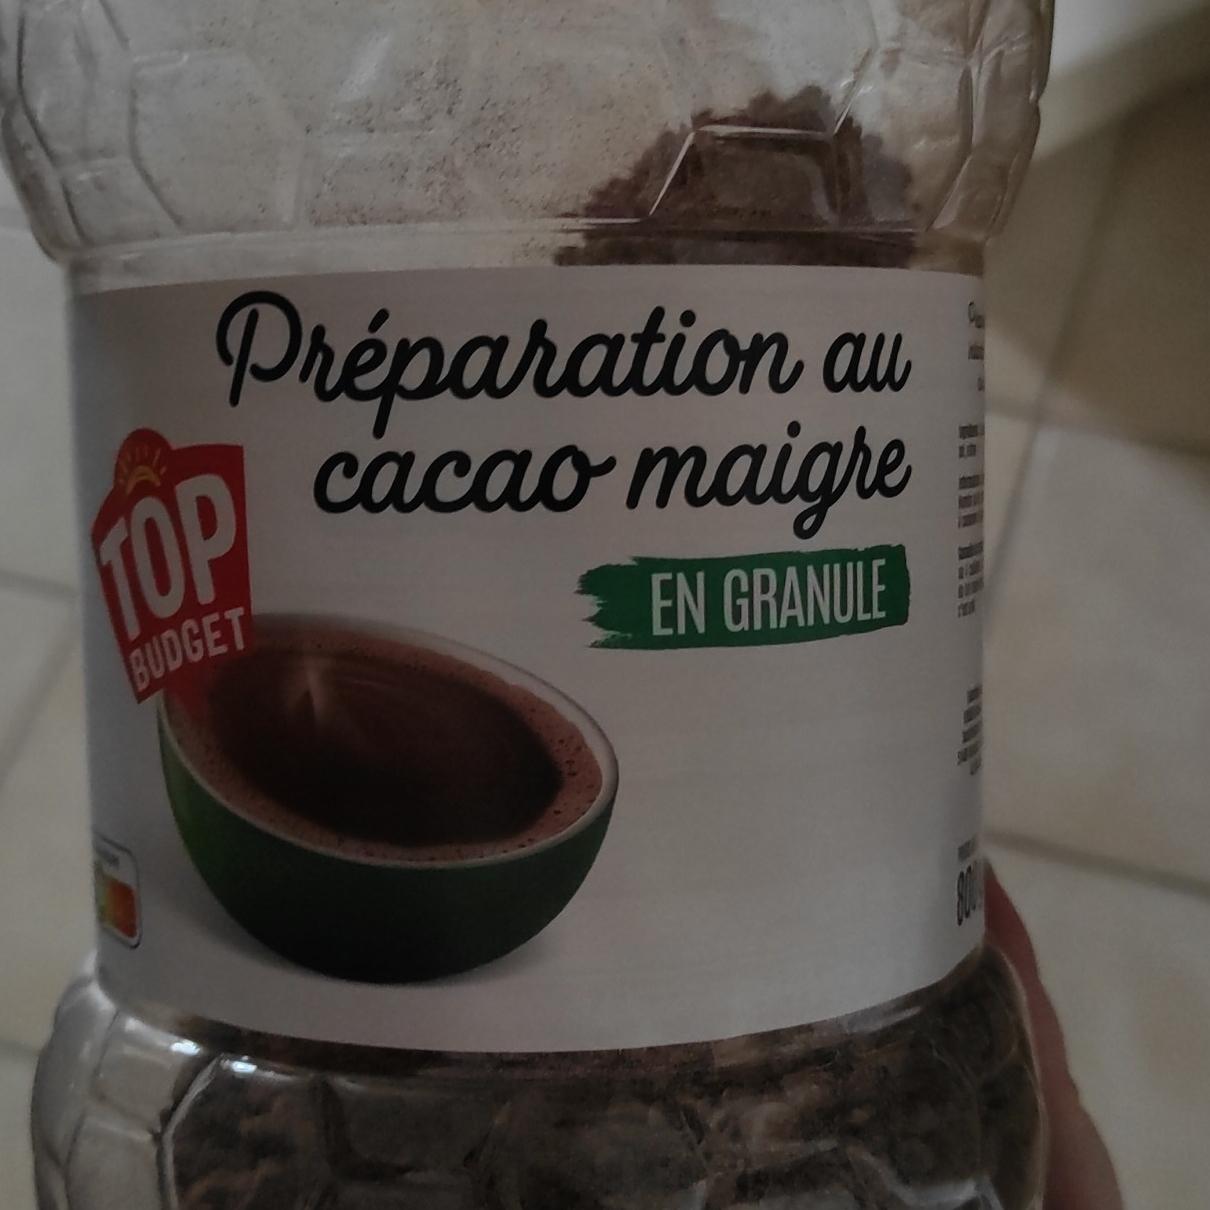 Fotografie - Préparation au cacao maigre Top Budget